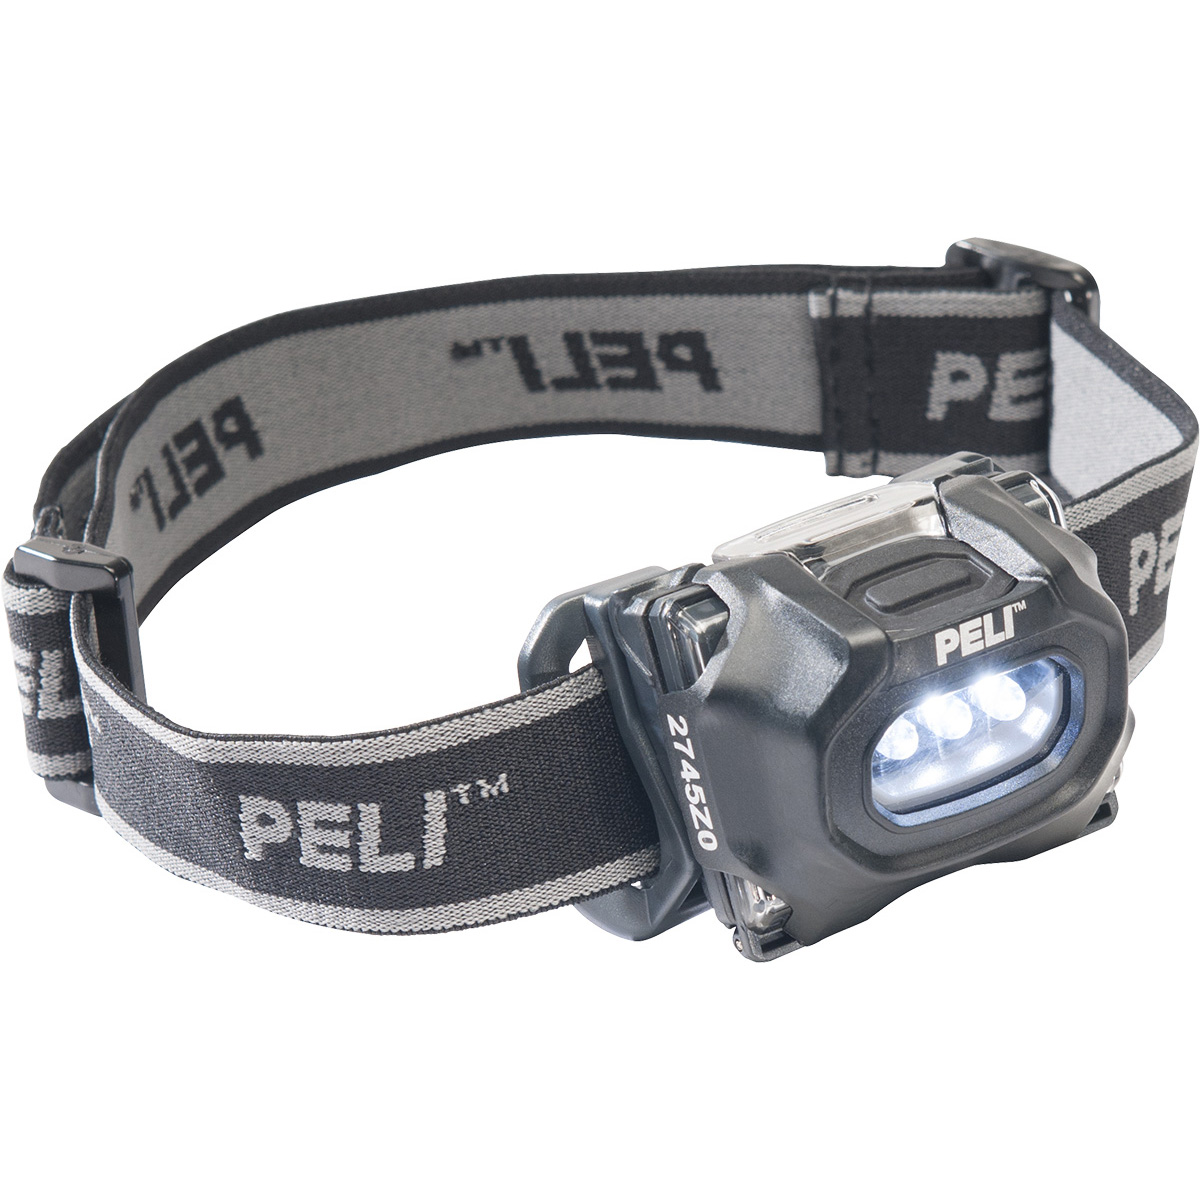 Взрывобезопасный фонарь Peli 2745Z0 LED ATEX Zone 0 налобный черный 027450-0104-110E